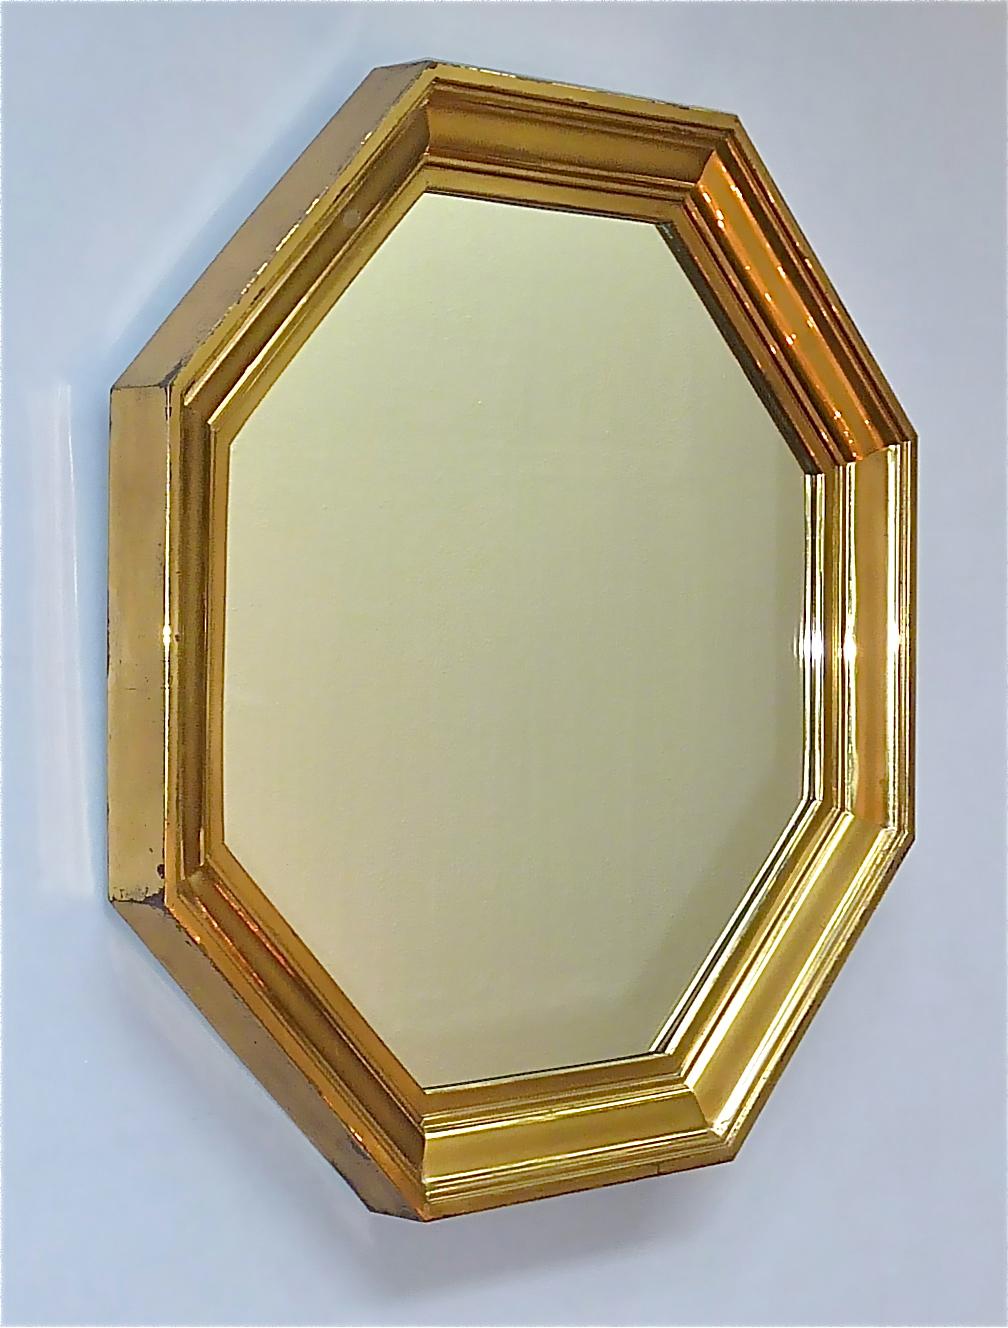 Fantastique grand miroir octogonal Maison Jansen, France, vers les années 1970. Probablement conçu par Sandro Petti ou Guy Lefevre, ce beau miroir de forme octogonale est composé d'un cadre en laiton patiné à gradins et d'un verre miroir sur une